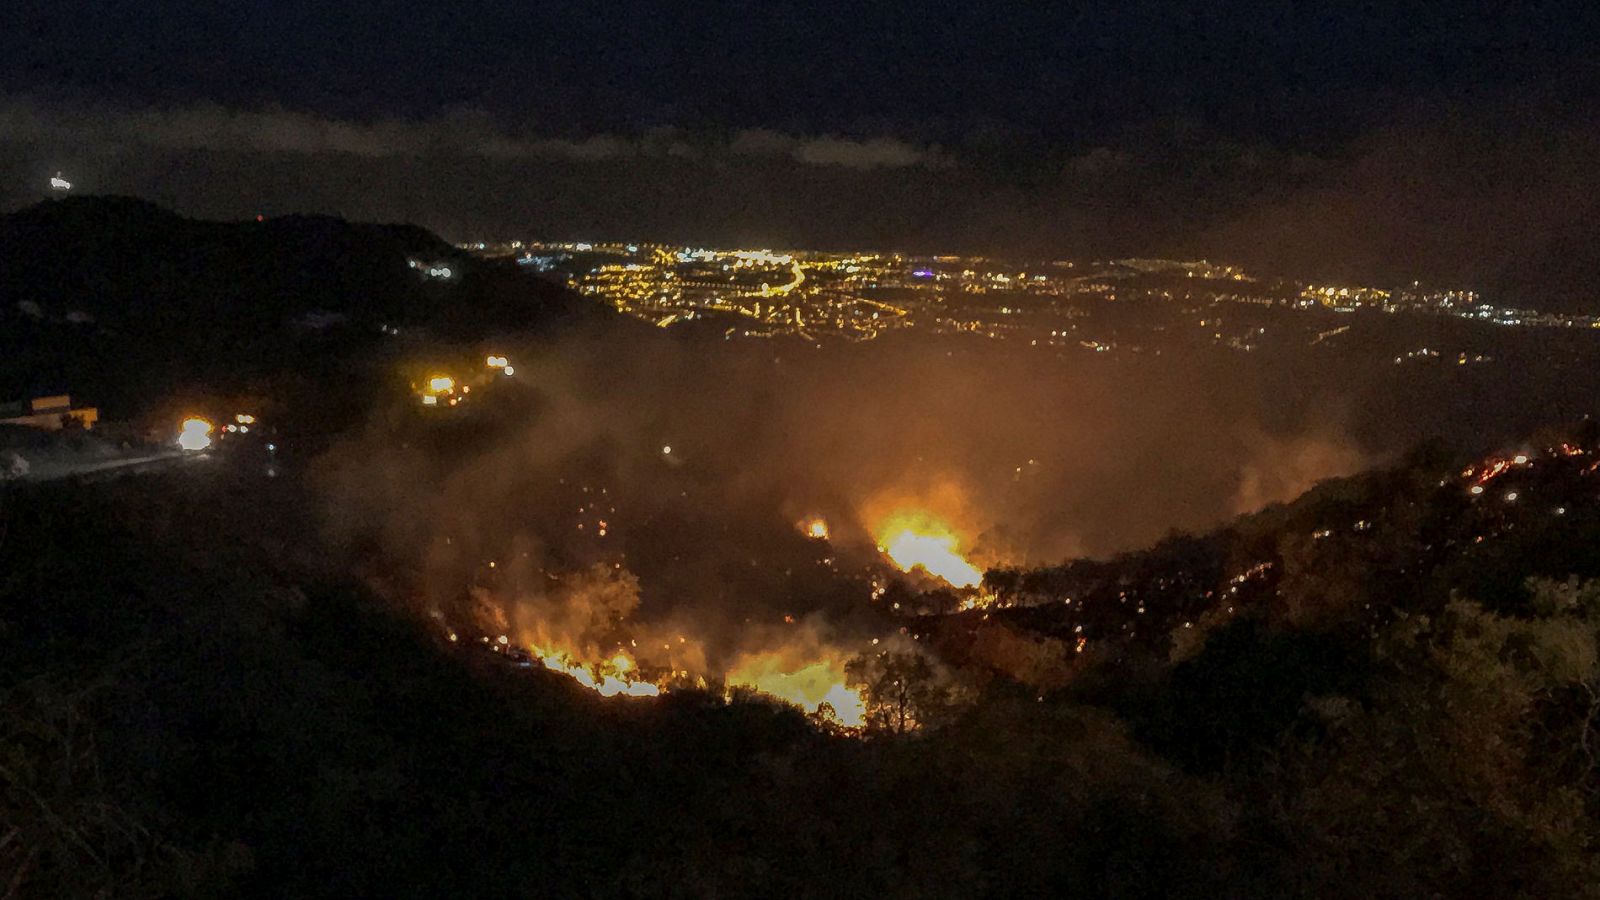 Incendios: El incendio de Gran Canaria sigue sin control y afecta ya a 1500 hectáreas - RTVE.es